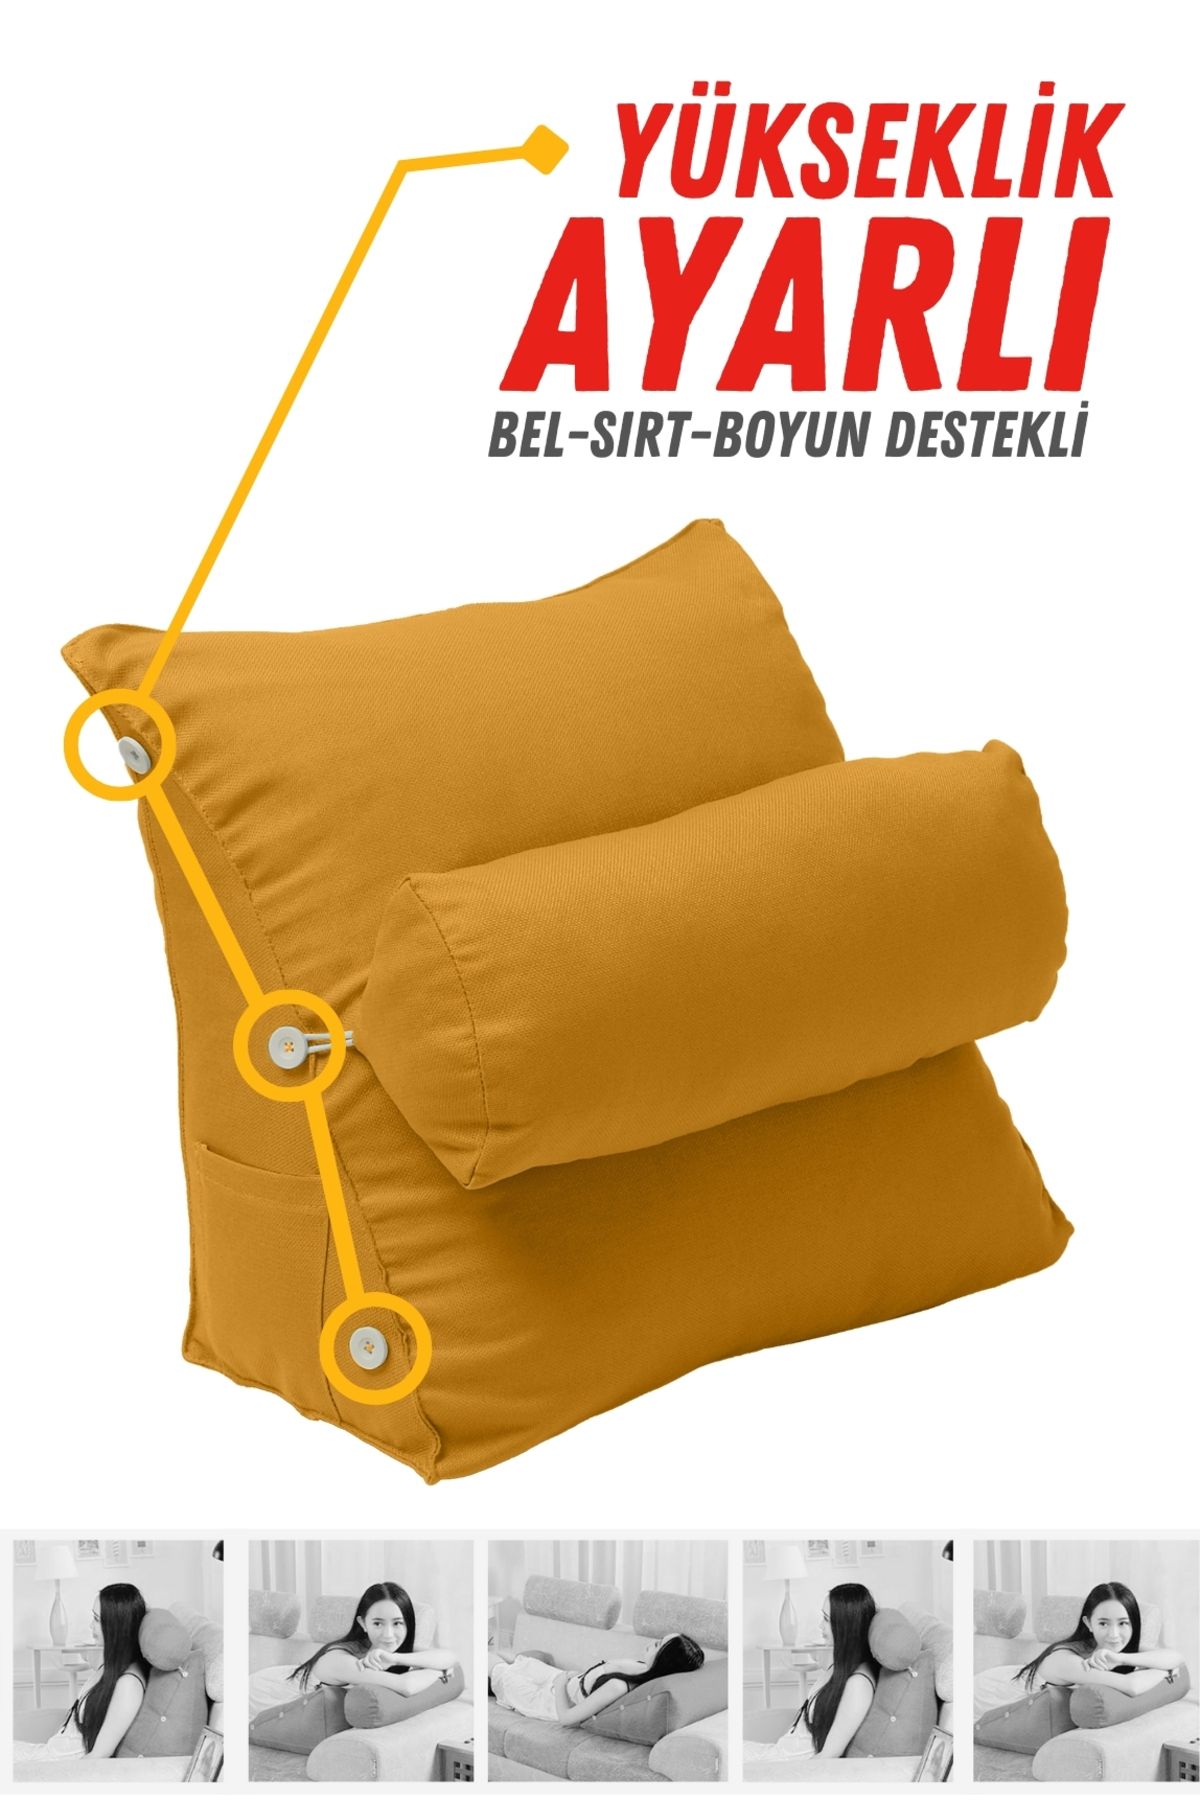 XPERMATE Yükseklik Ayarlı Tv Yastığı - Bel Destek Yastığı - Sırt Yastığı - Boyun Destekli Yastık Sarı